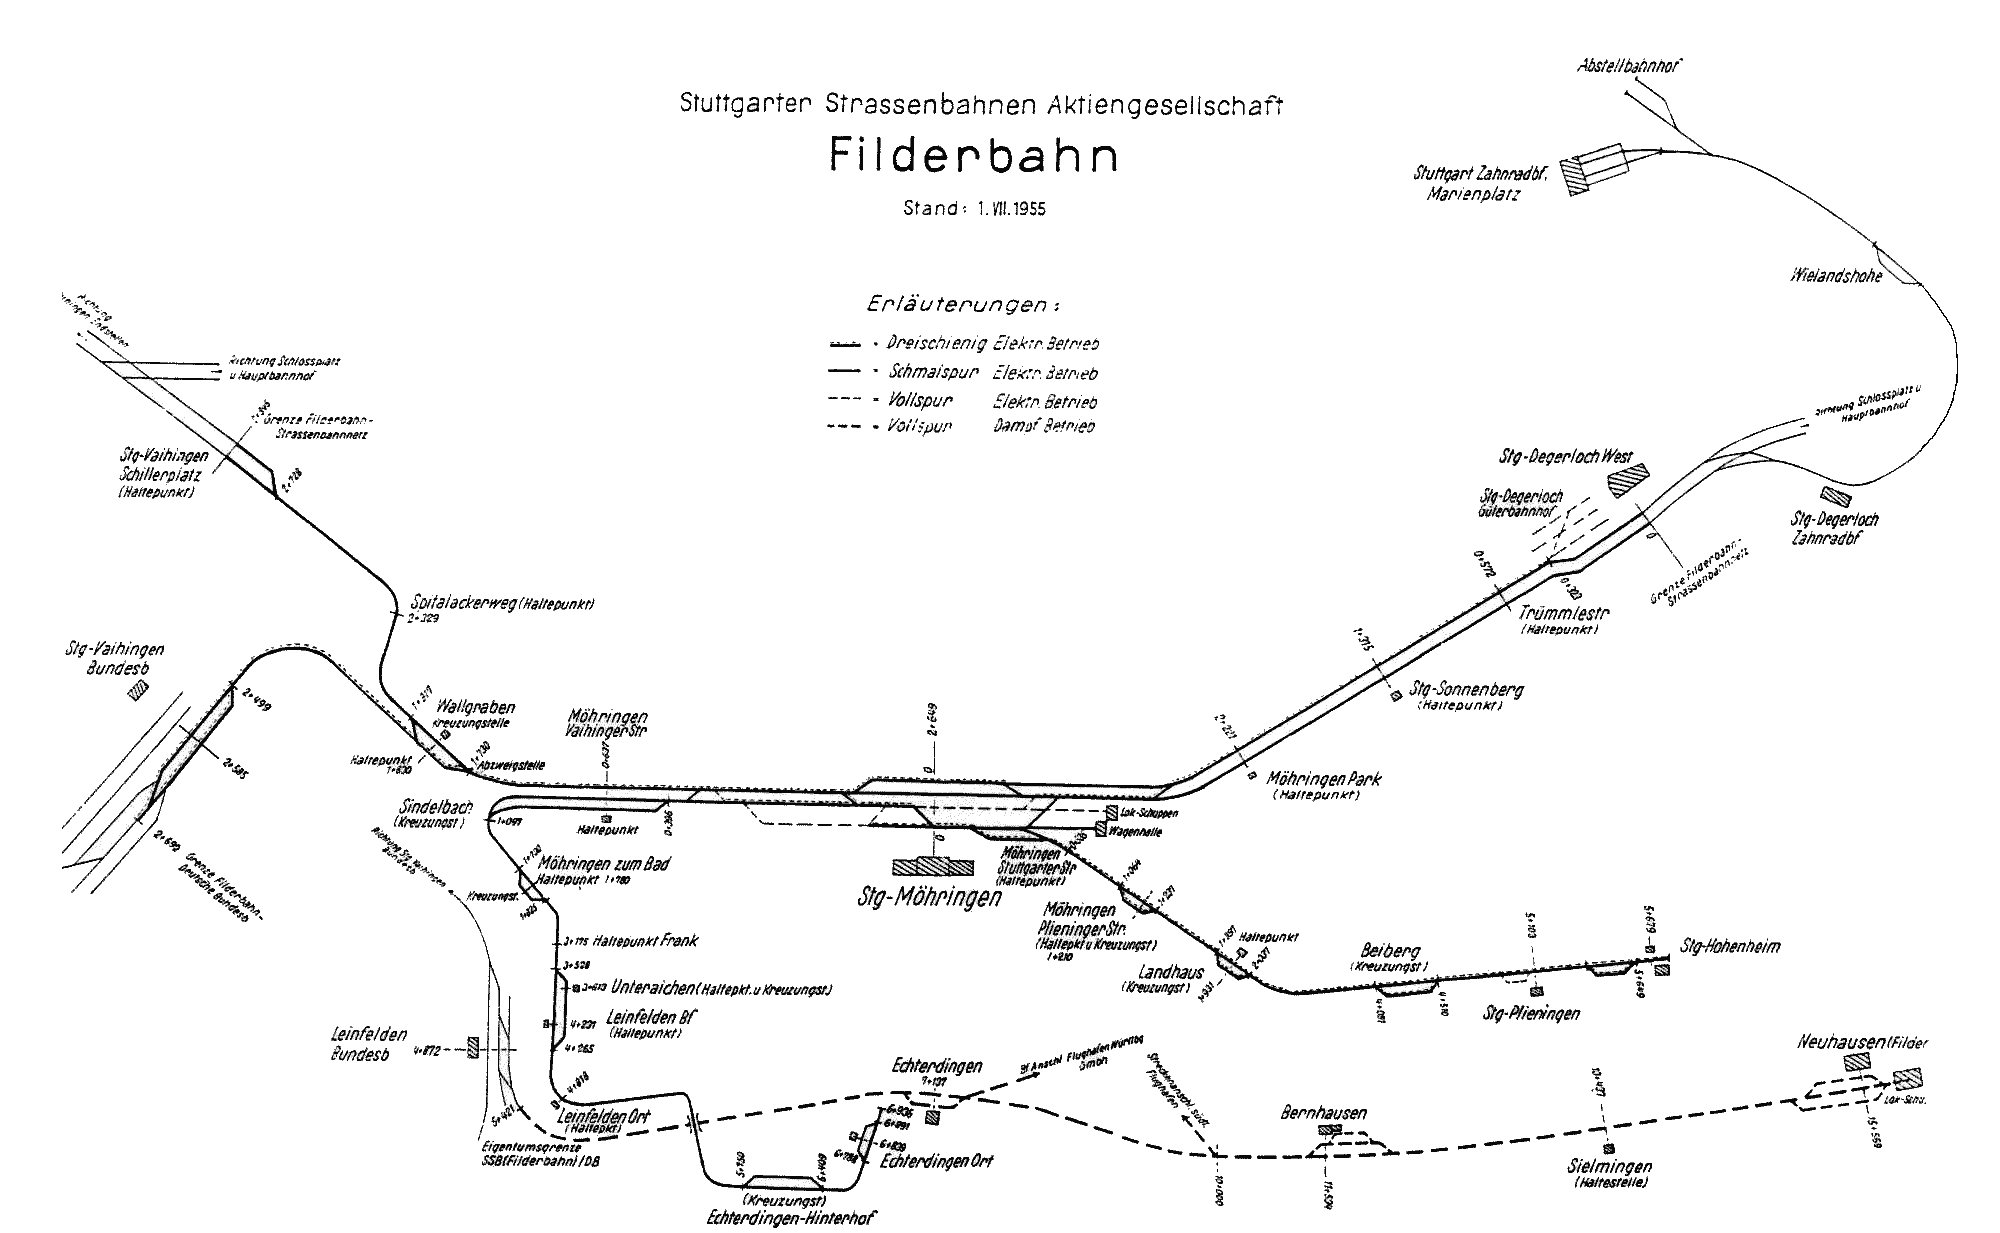 Streckenplan der Filderbahn